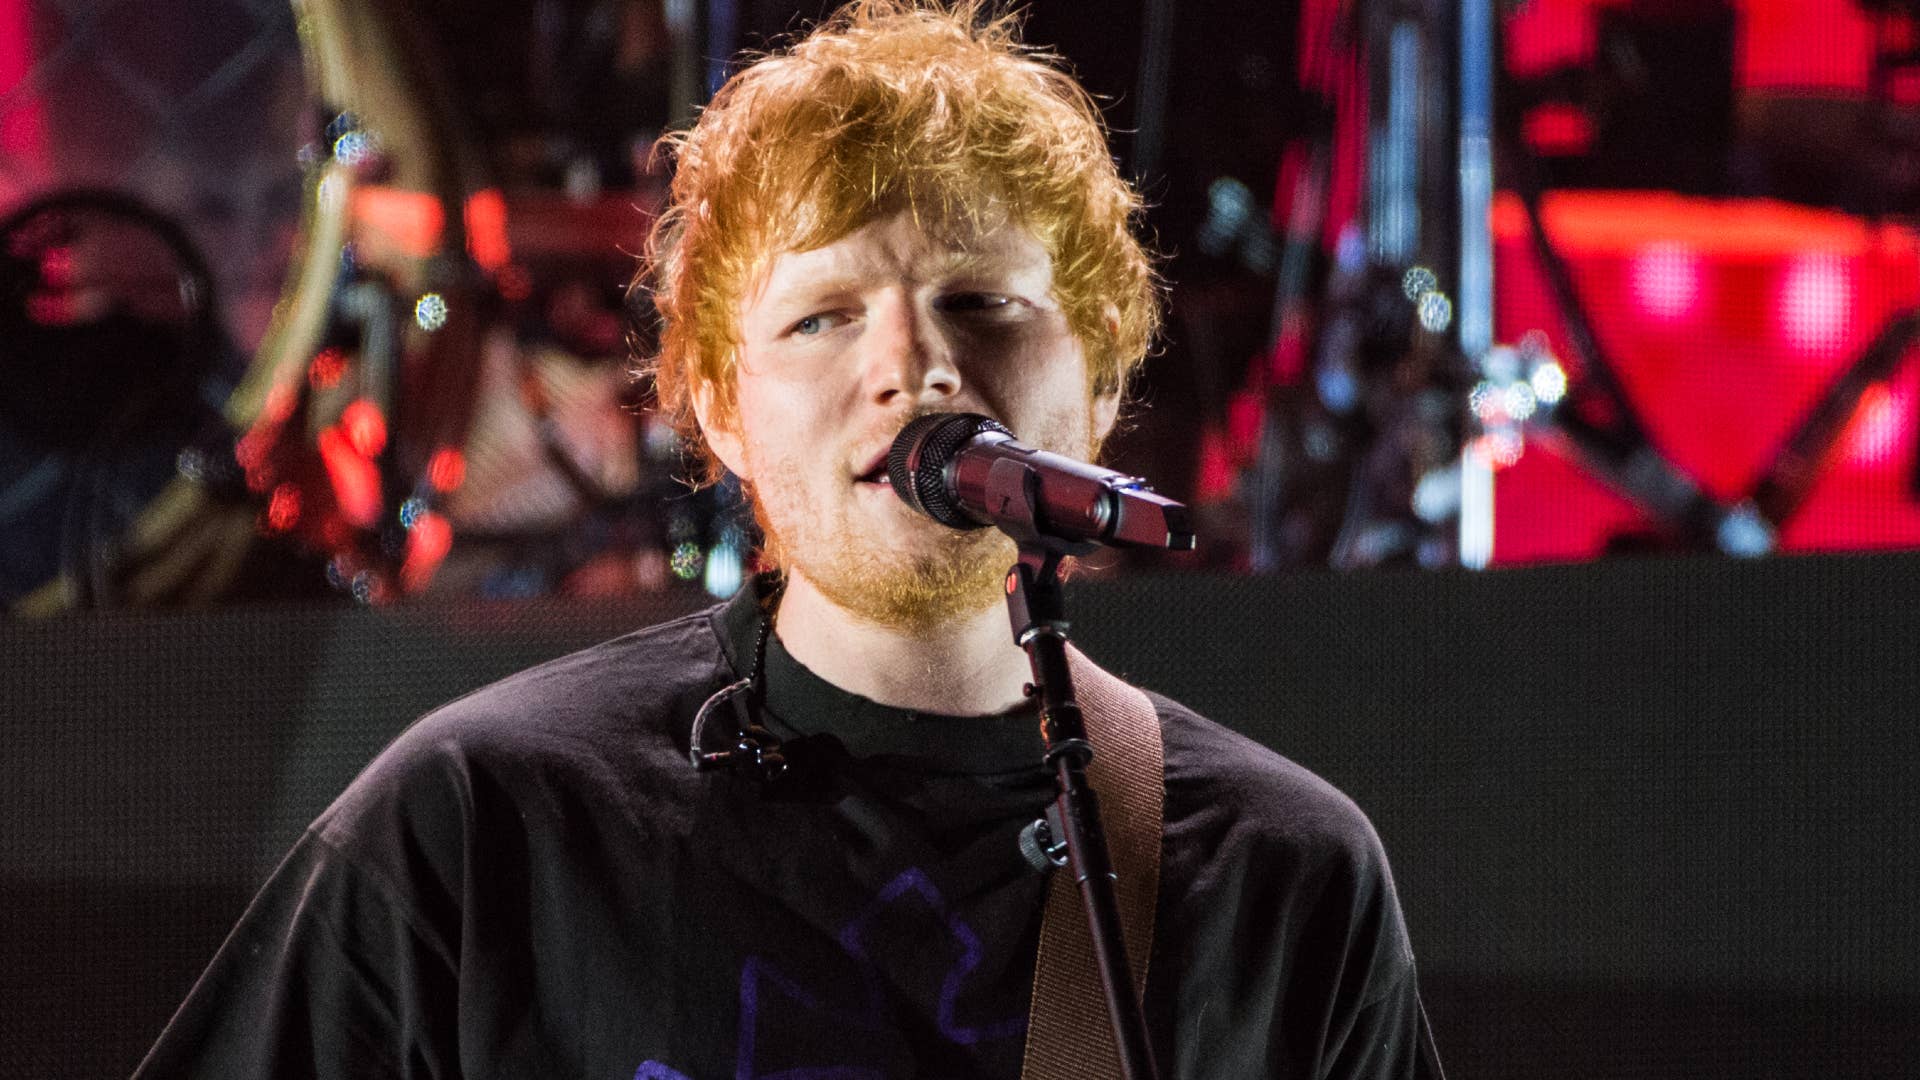 Ed Sheeran is seen performing live